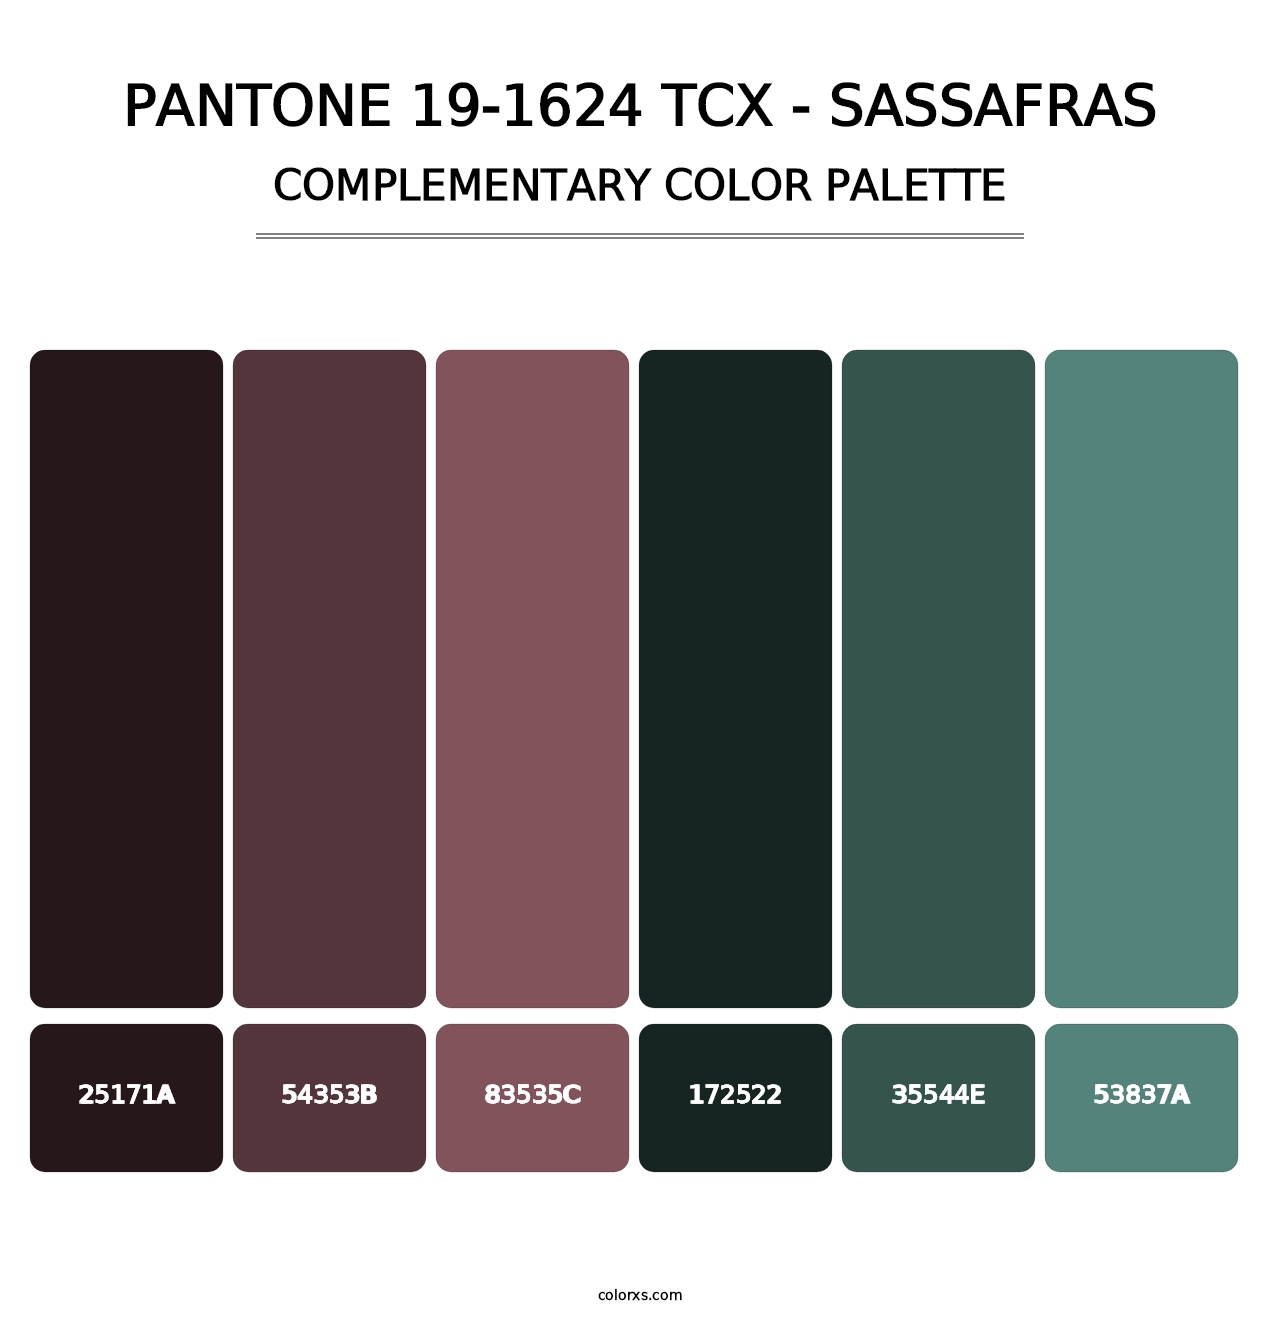 PANTONE 19-1624 TCX - Sassafras - Complementary Color Palette